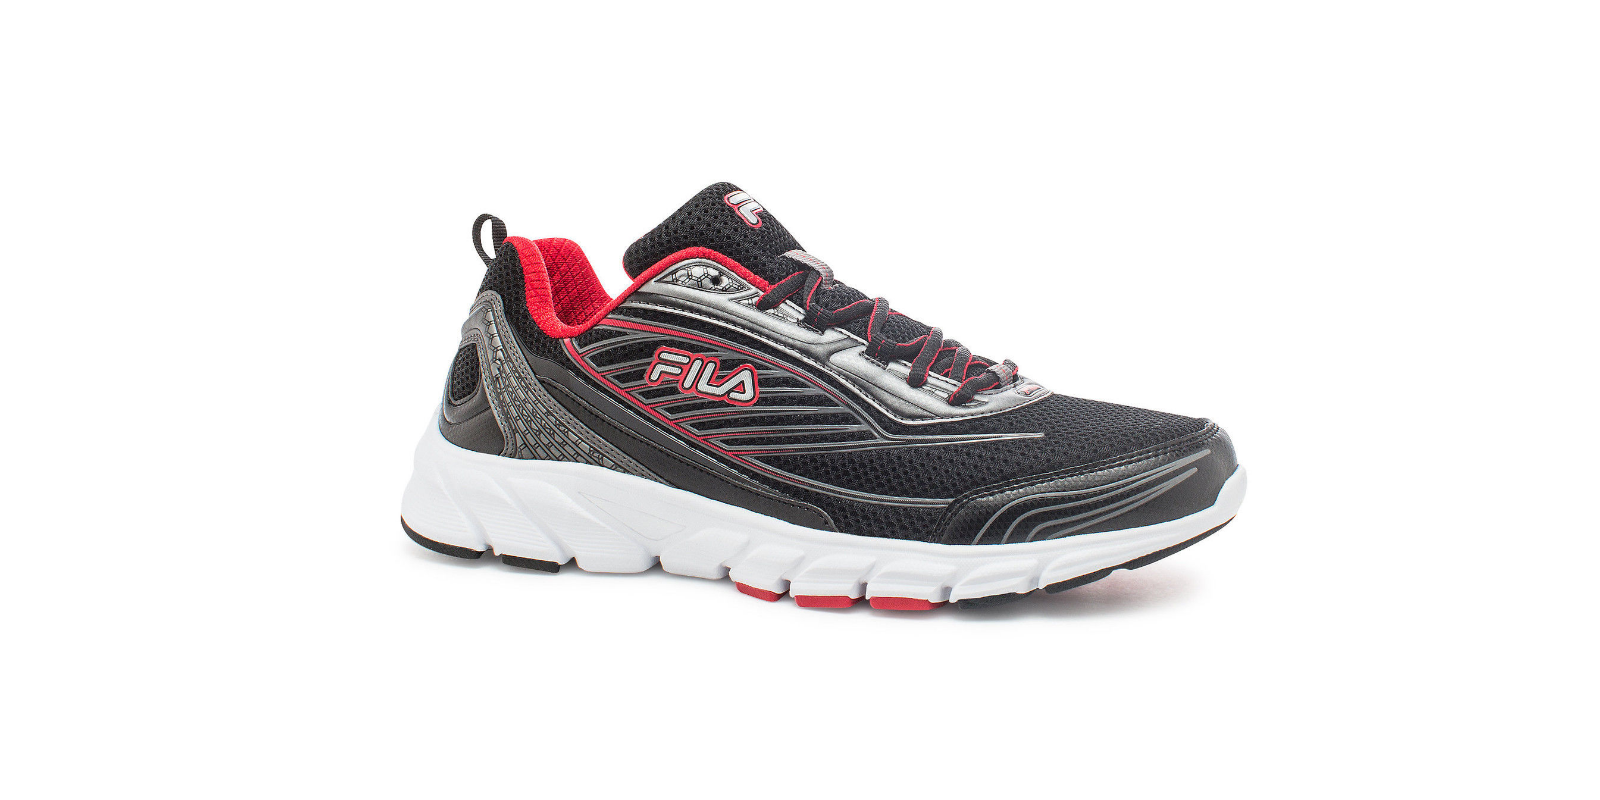 FILA Men’s Forward 2 Running Shoes Just $24.99!!